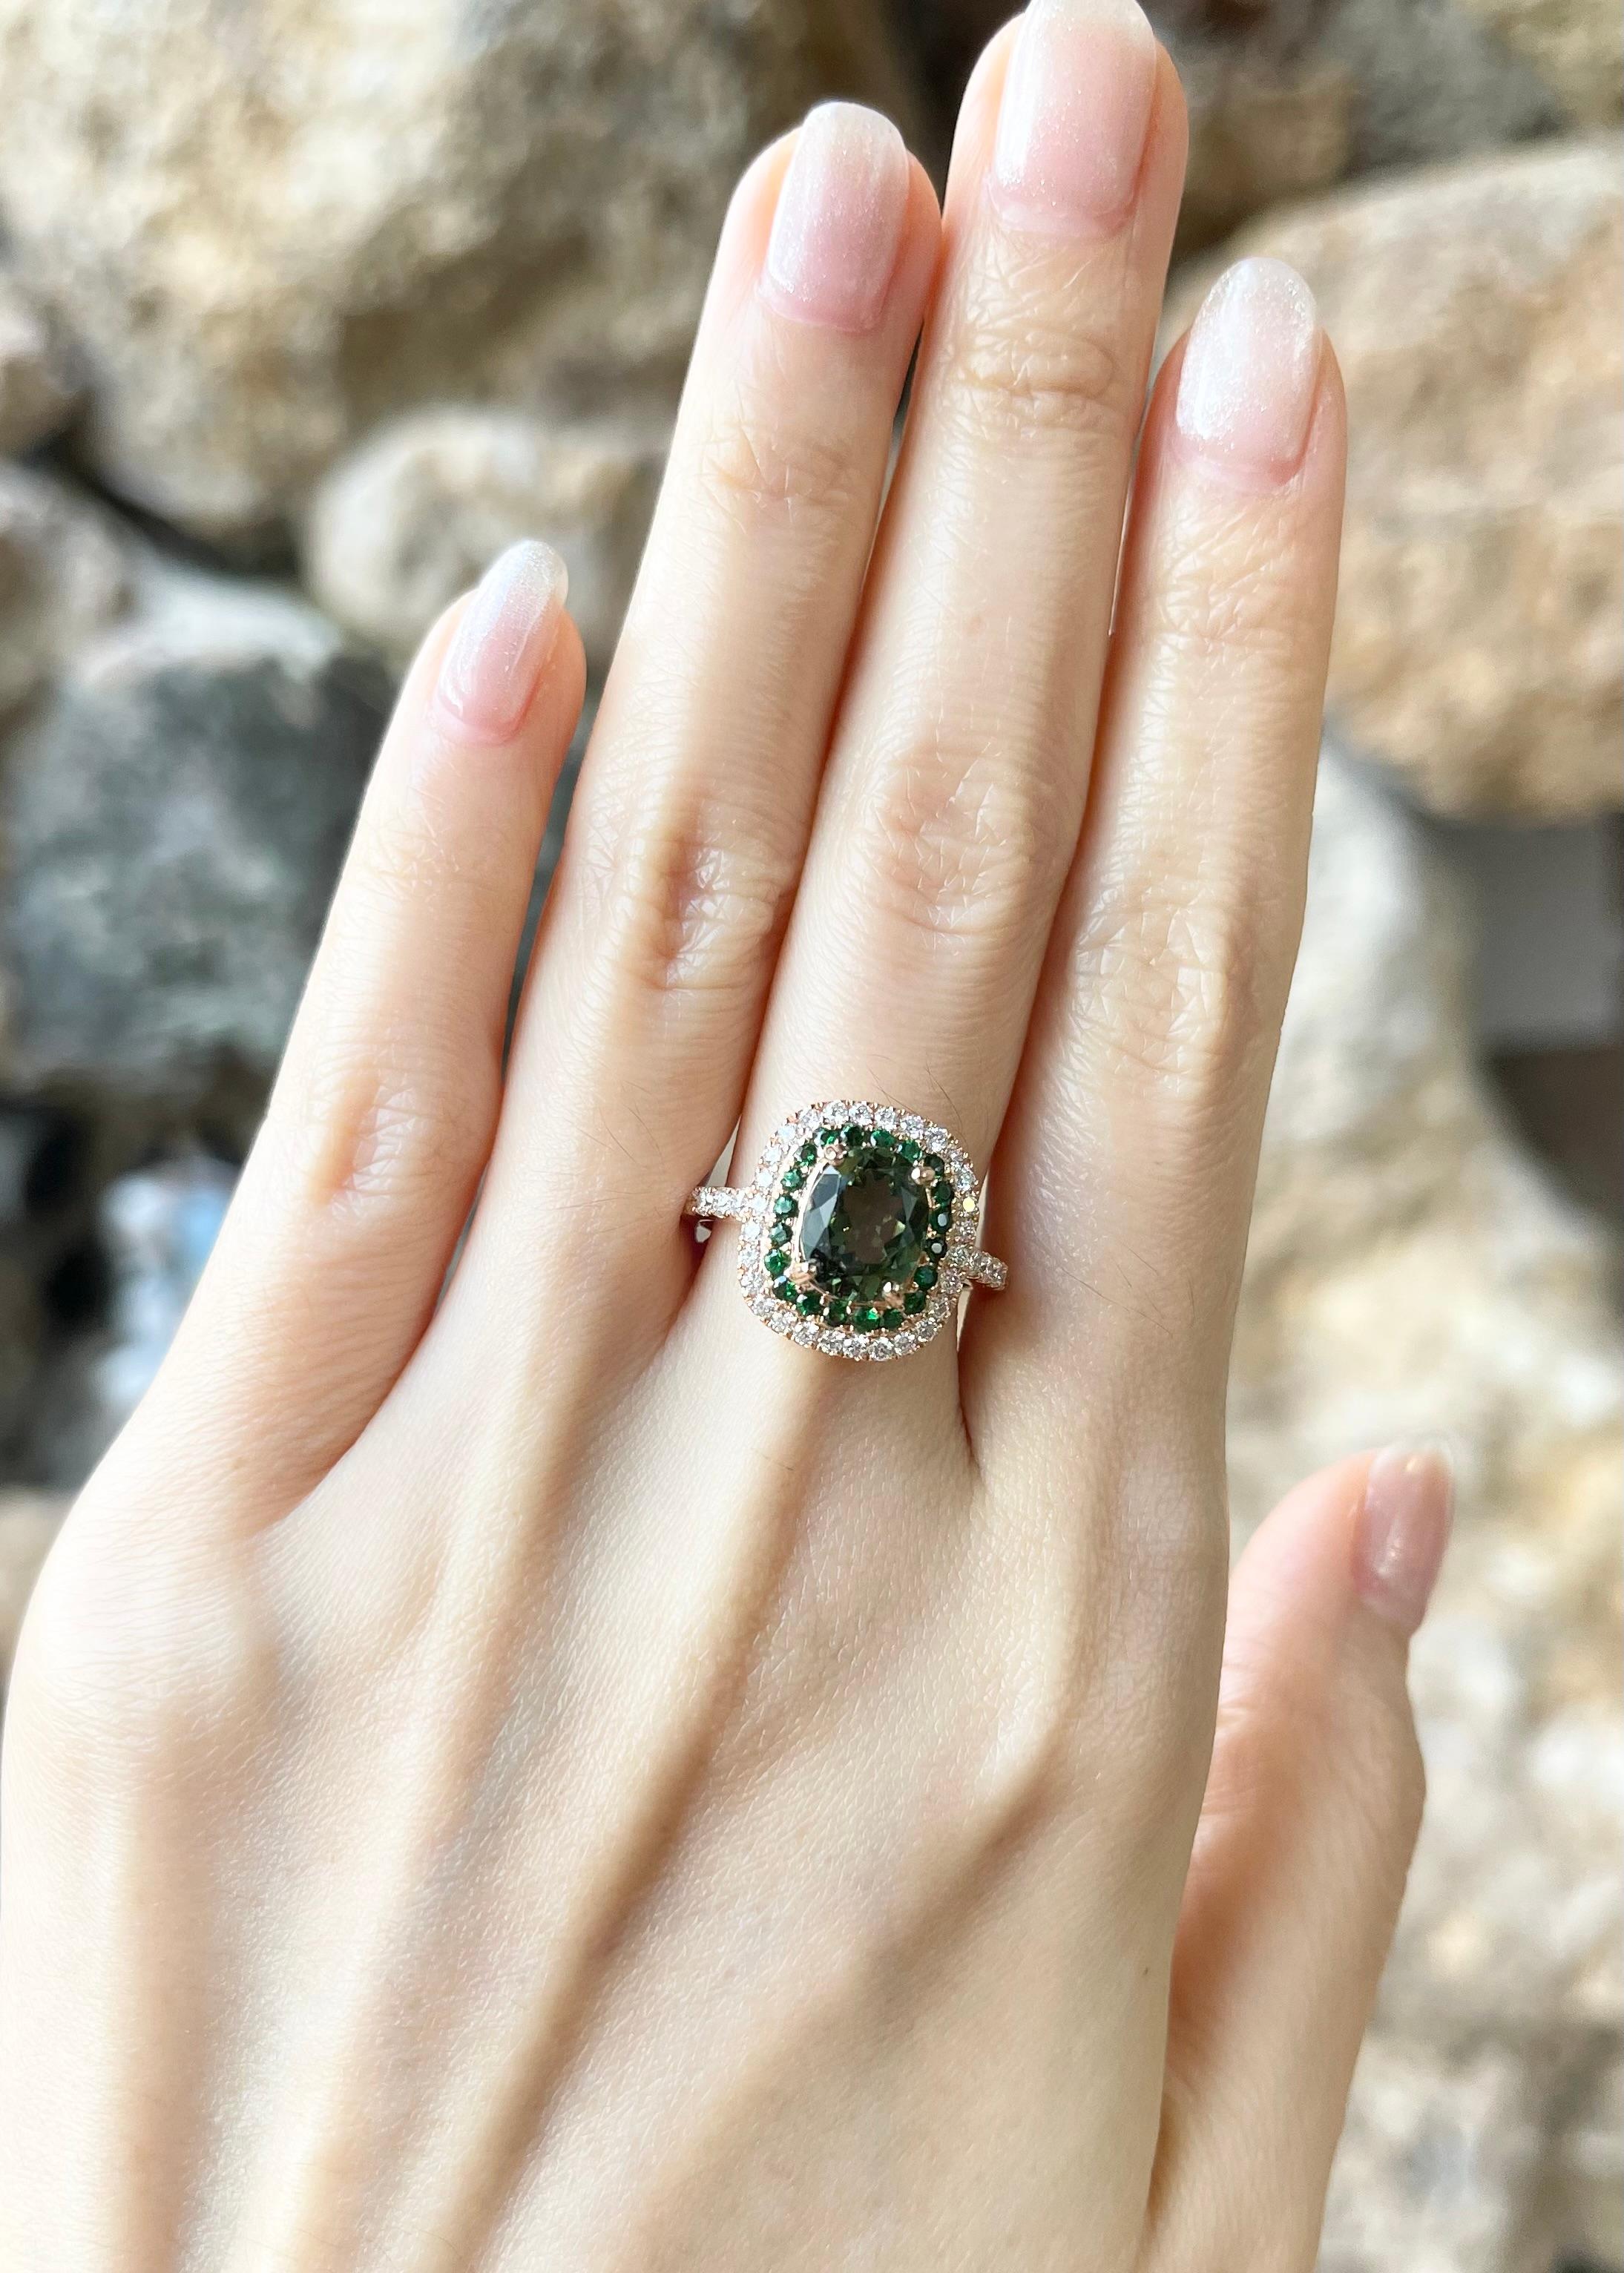 Saphir vert 1,83 carats, Tsavorite 0,40 carat et Diamant 0,58 carat Bague en or rose 18 carats

Largeur :  1.3 cm 
Longueur : 1.5 cm
Taille de l'anneau : 54
Poids total : 5,48 grammes

